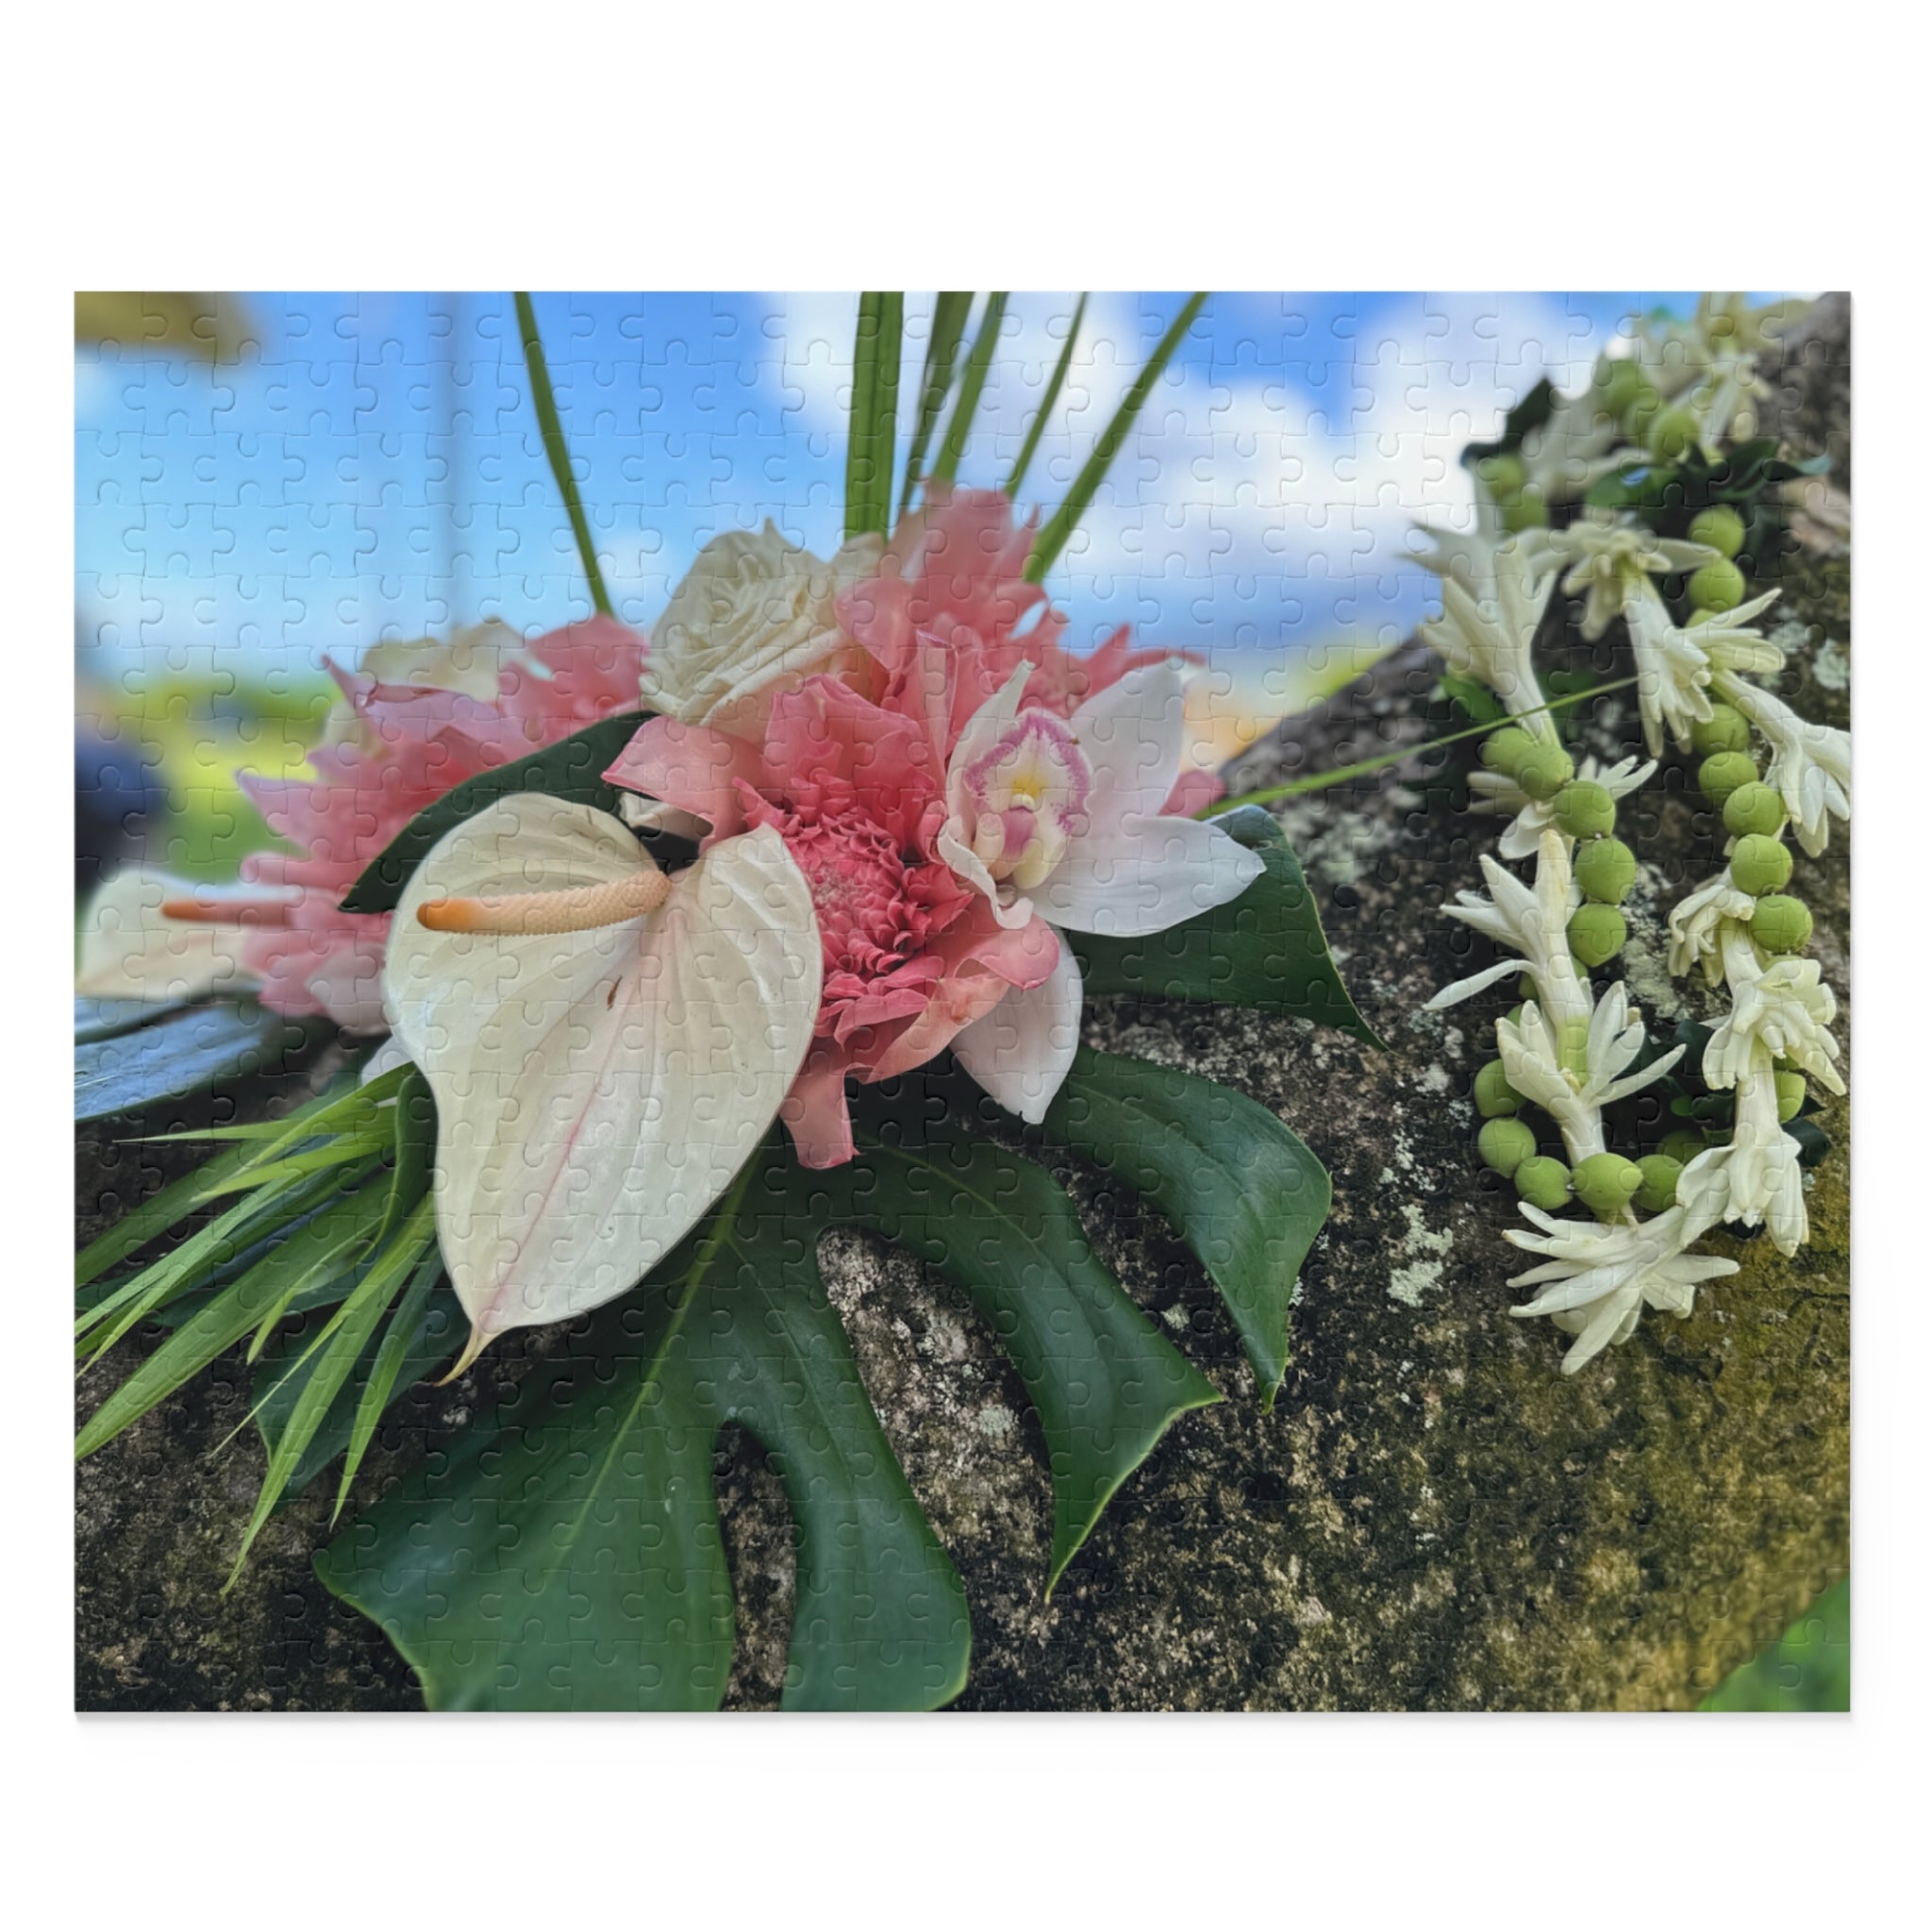 Wedding Bouquet Puzzle (500-Piece) - Global Village Kailua Boutique